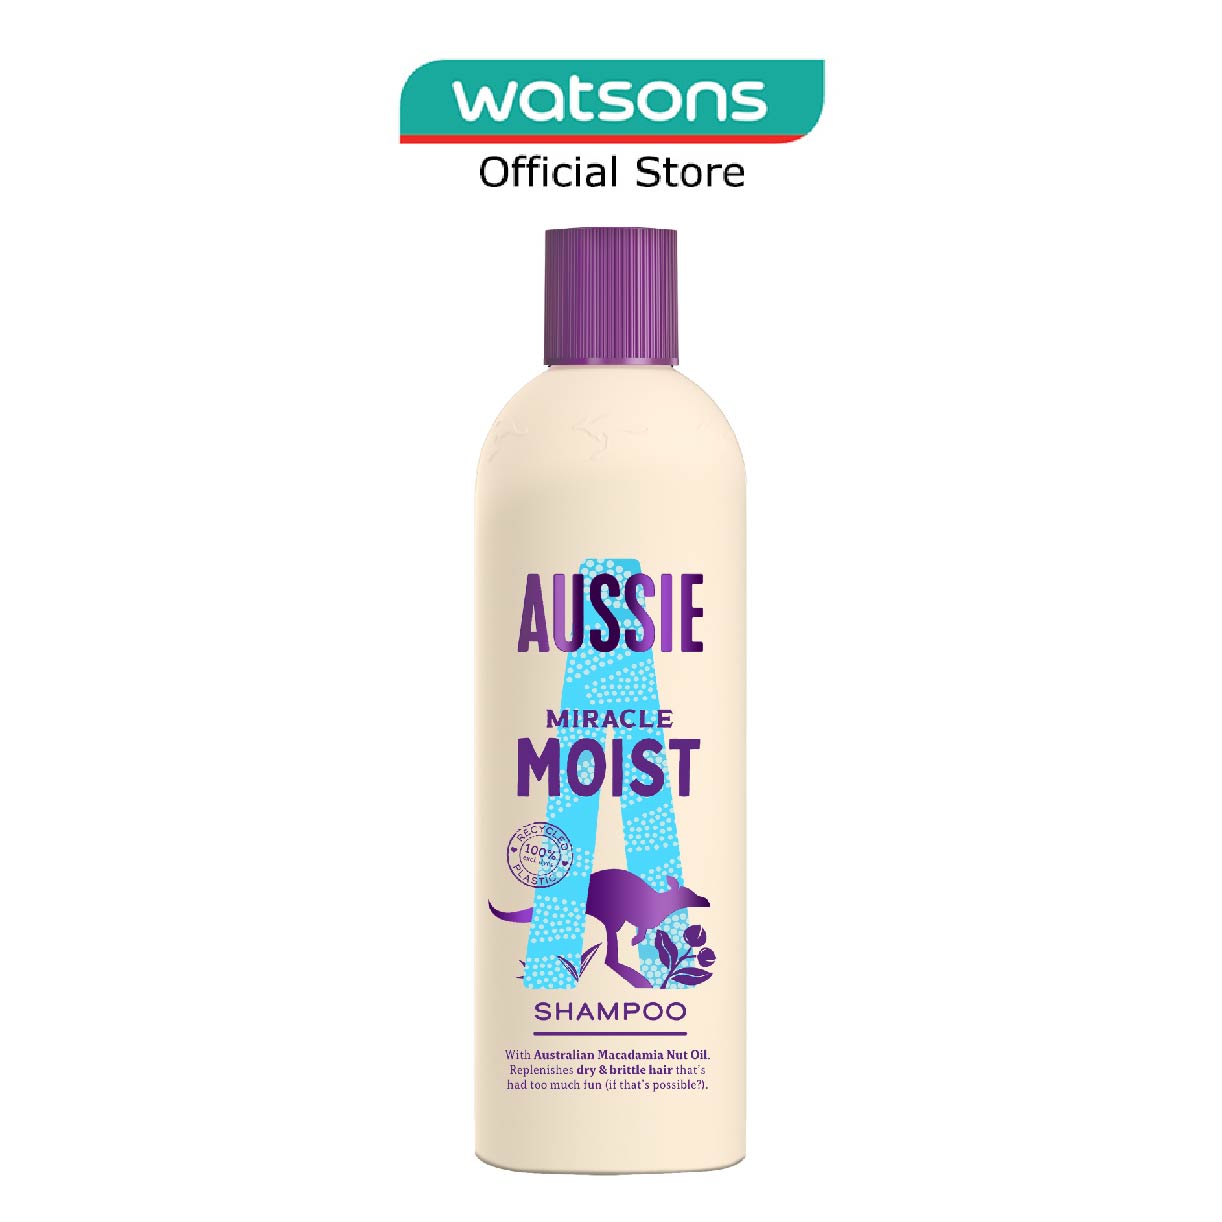 Aussie Miracle Moist Shampoo - Damaged Hair Shampoo